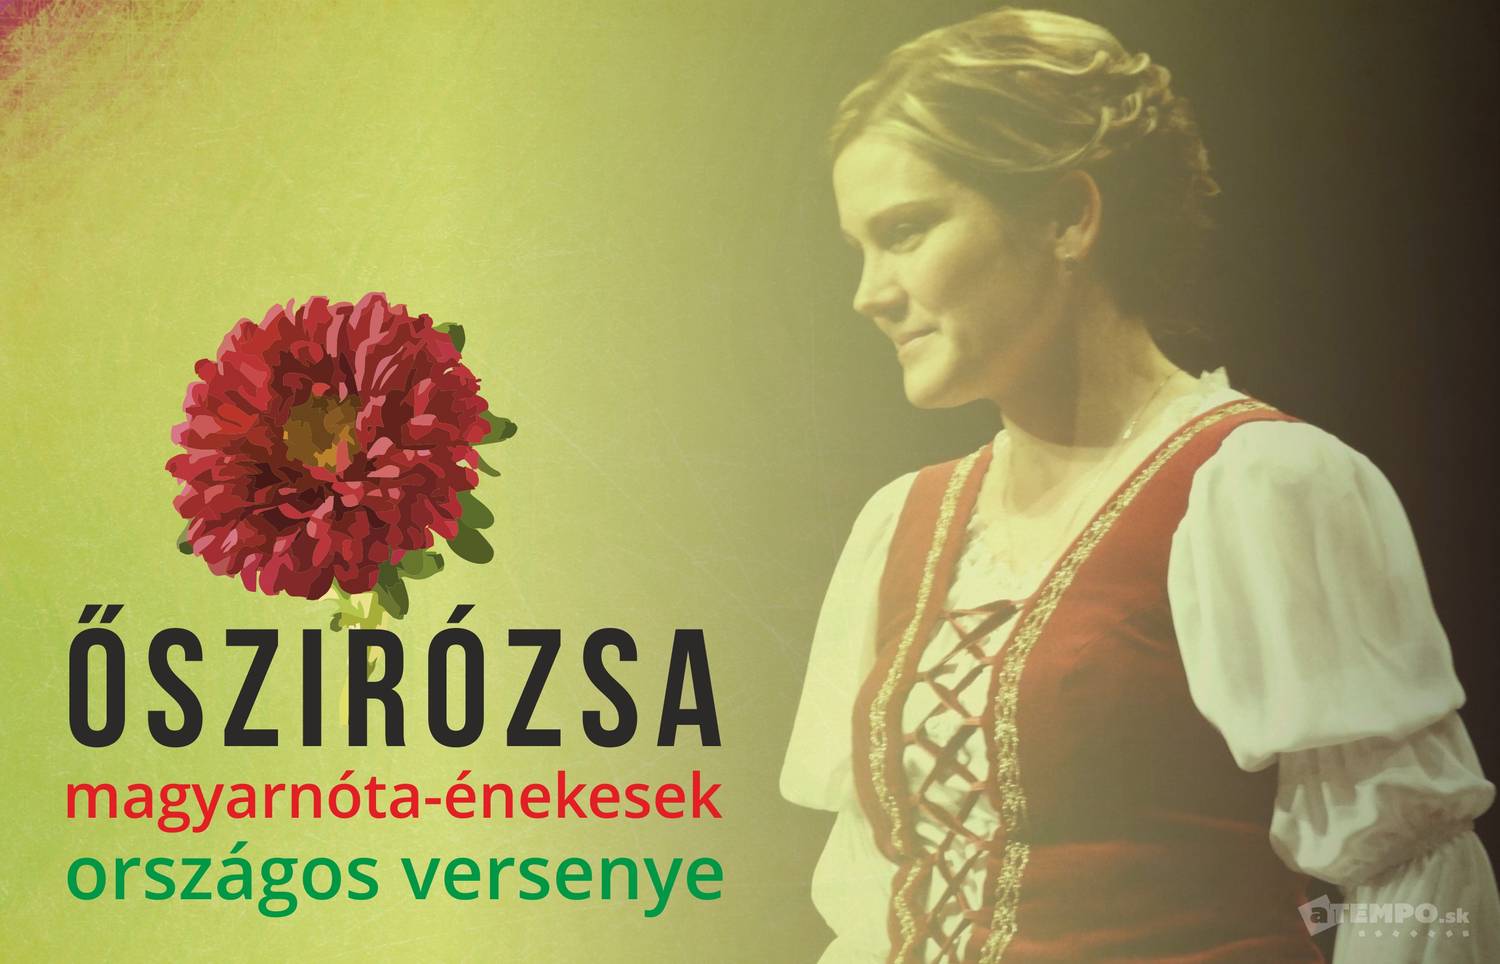 Őszirózsa - magyarnóta-énekesek országos versenye